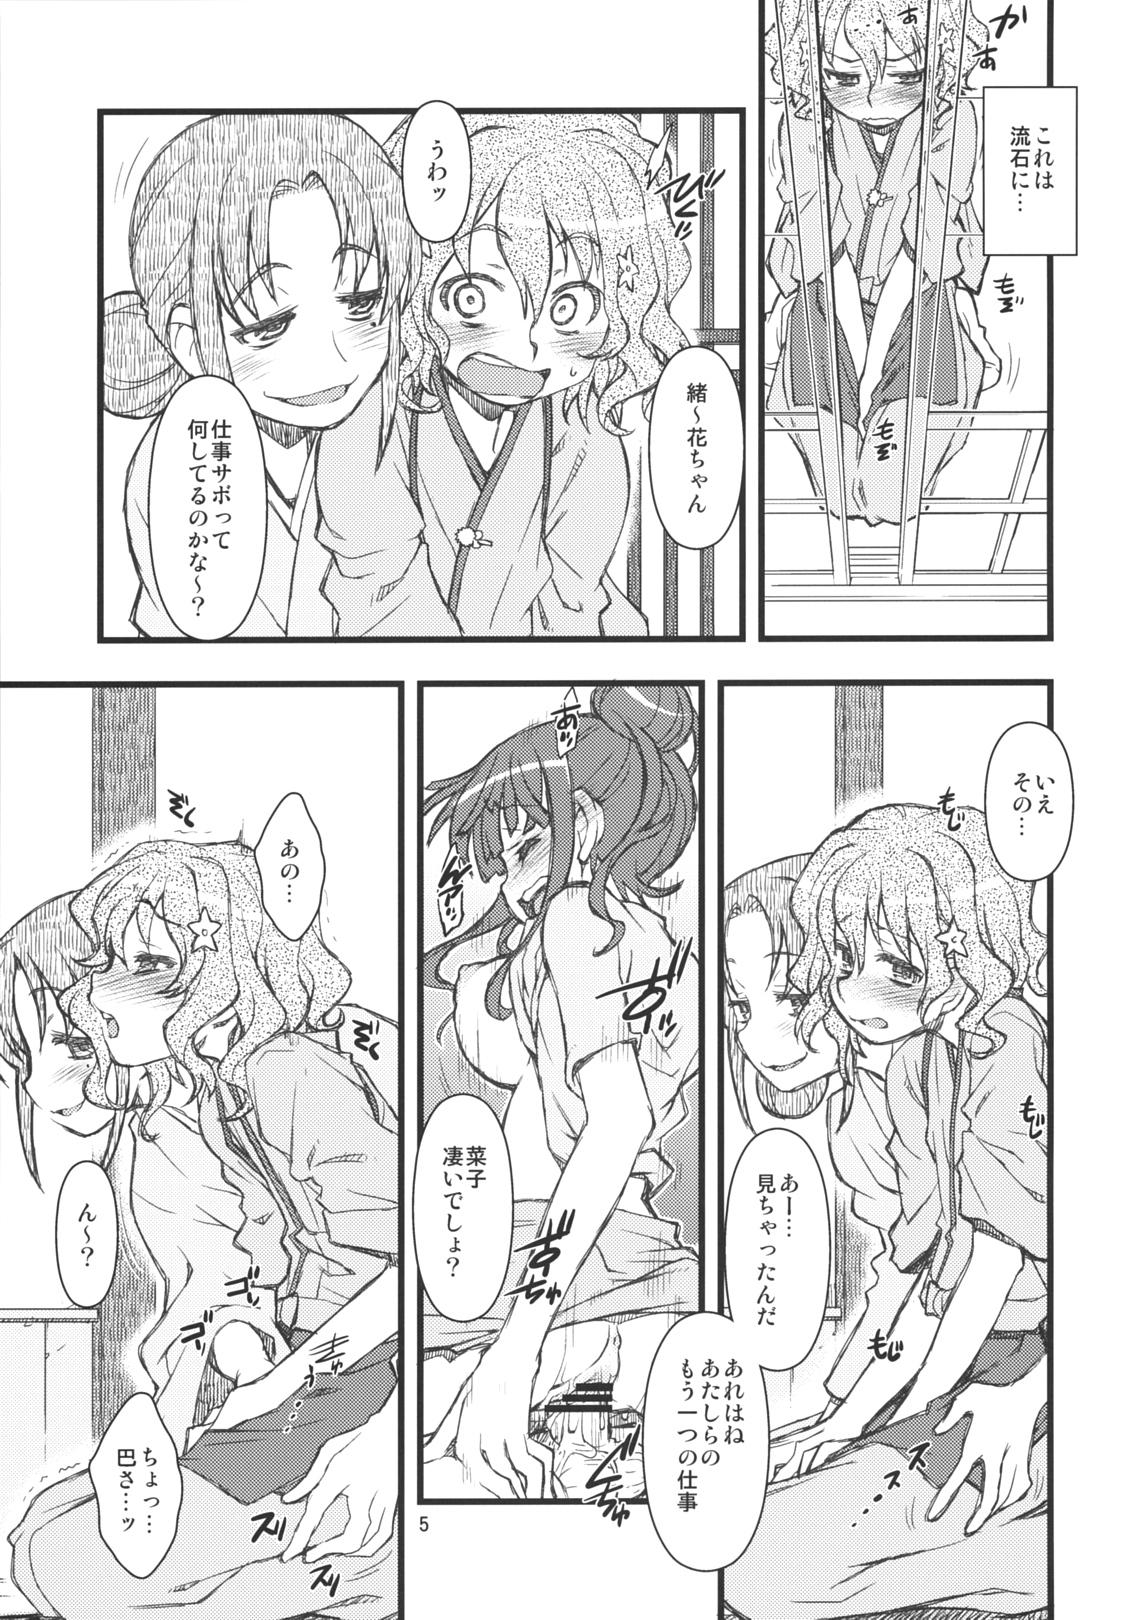 Tittyfuck Hanasake! GIRLS - Hanasaku iroha Gostosas - Page 4